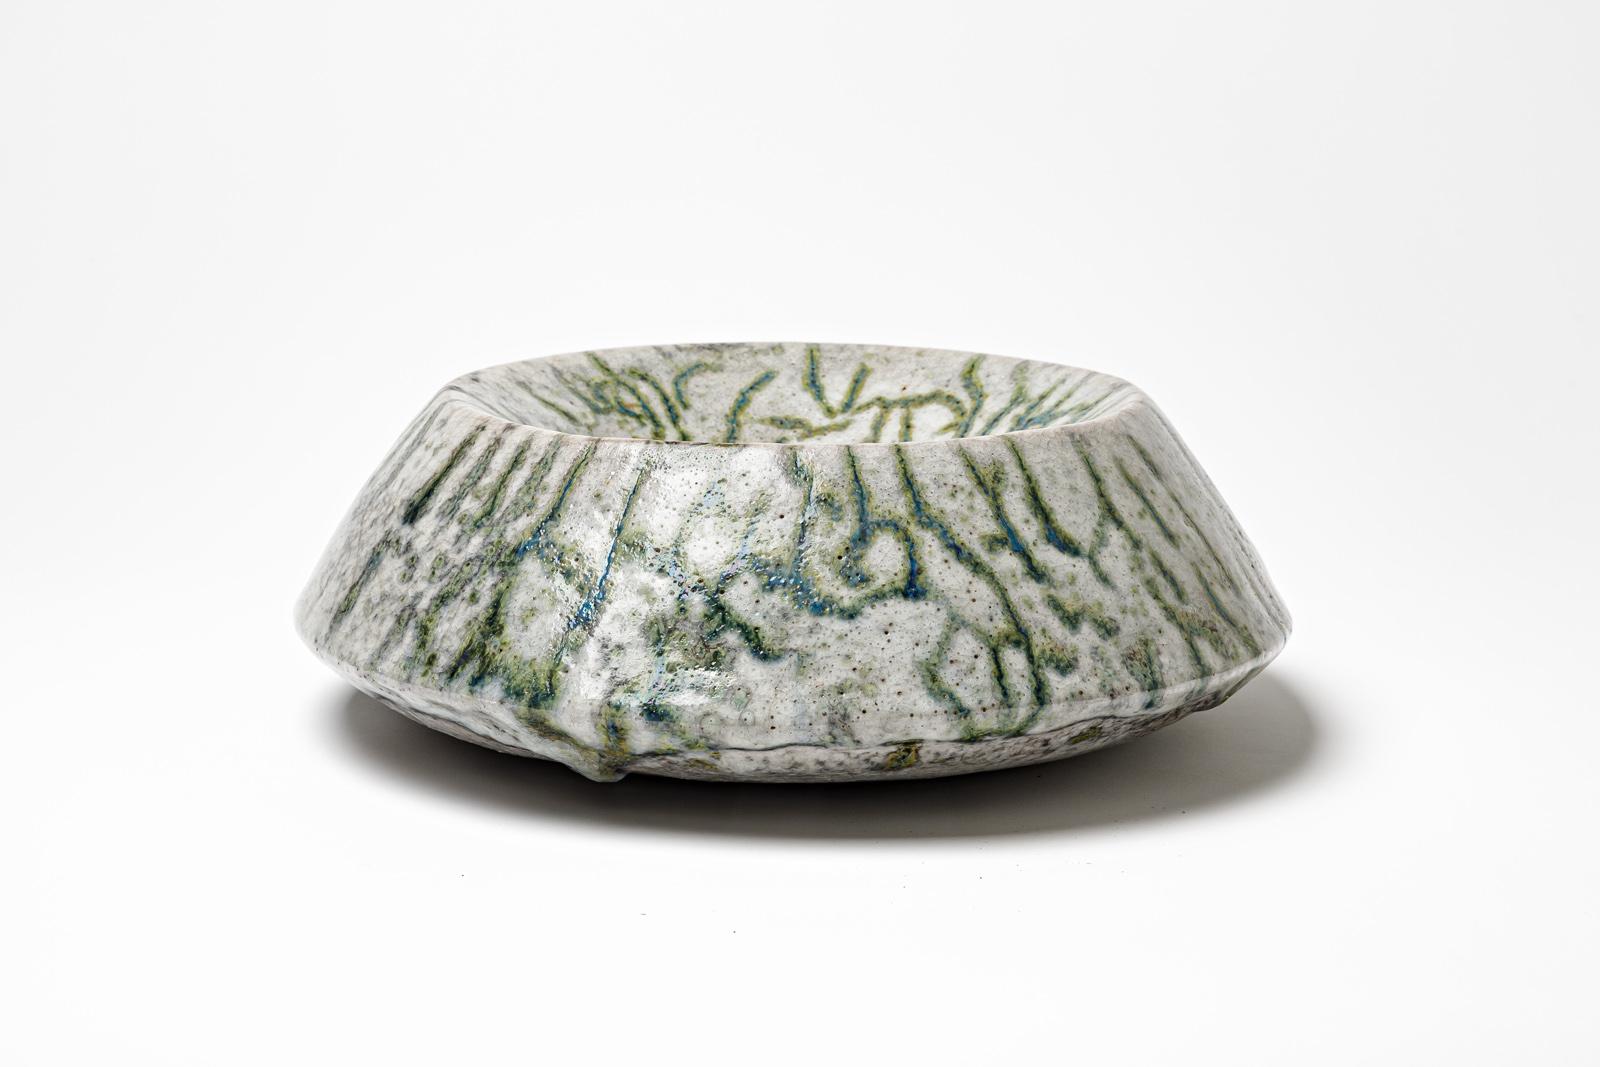 Grün und weiß glasierte Keramiktasse von Gisèle Buthod Garçon. 
Raku gebrannt. Künstlermonogramm unter dem Sockel. CIRCA 1980-1990. 
H : 4,7' x 12,6' Zoll.